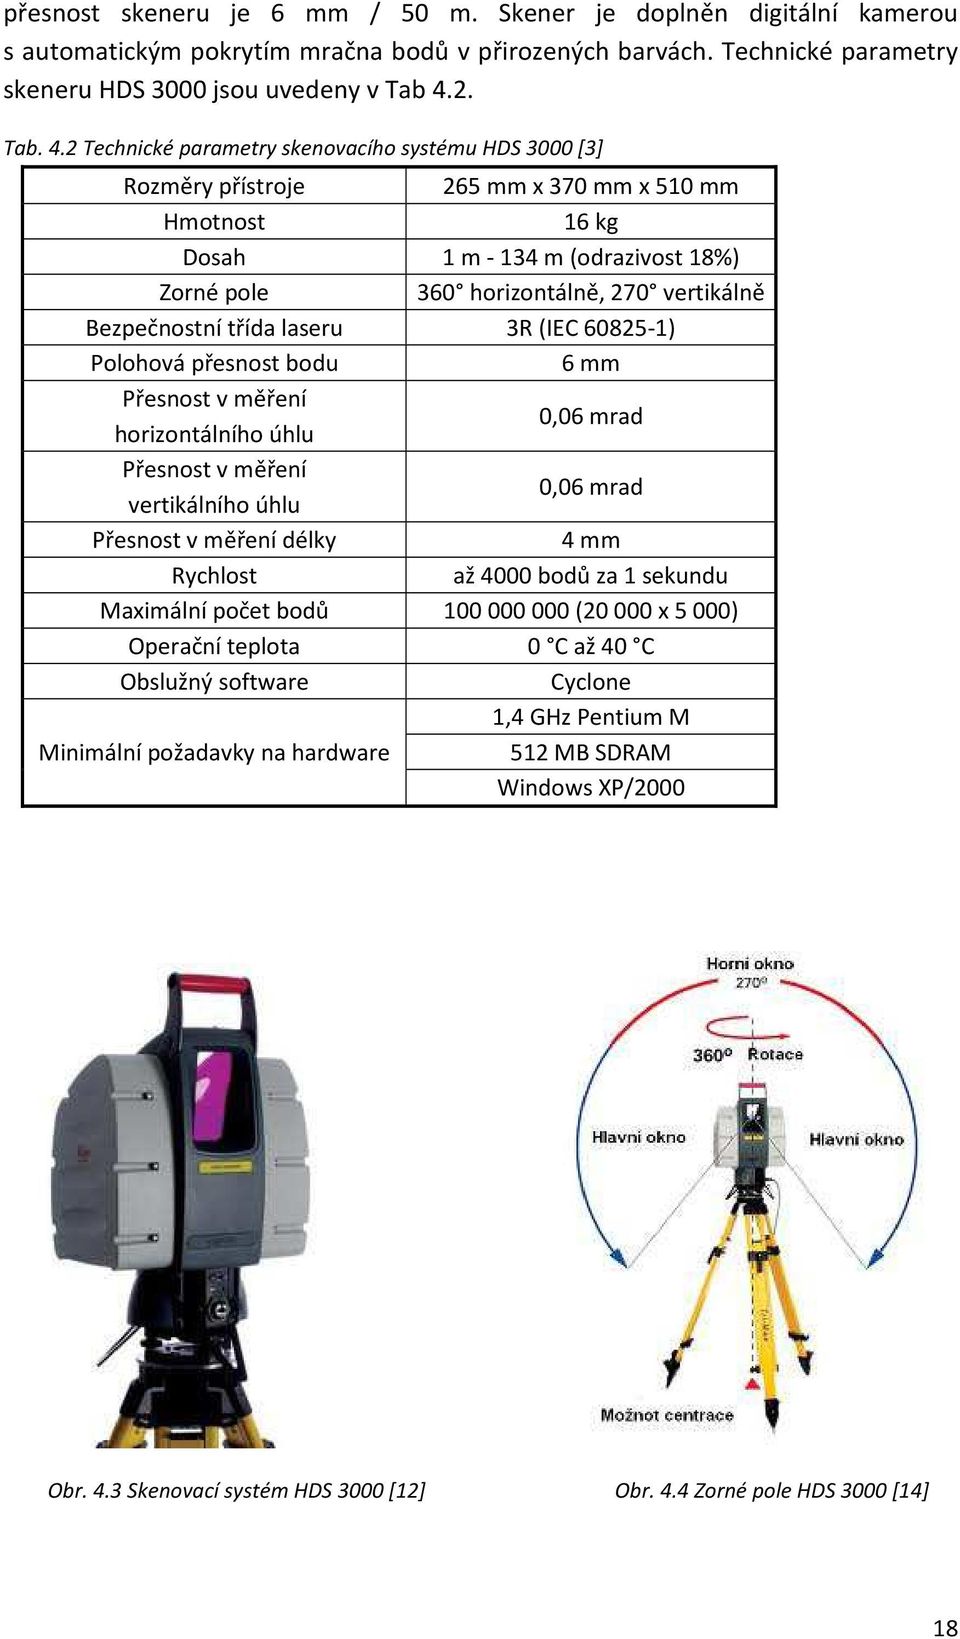 2 Technické parametry skenovacího systému HDS 3000 [3] Rozměry přístroje 265 mm x 370 mm x 510 mm Hmotnost 16 kg Dosah 1 m - 134 m (odrazivost 18%) Zorné pole 360 horizontálně, 270 vertikálně